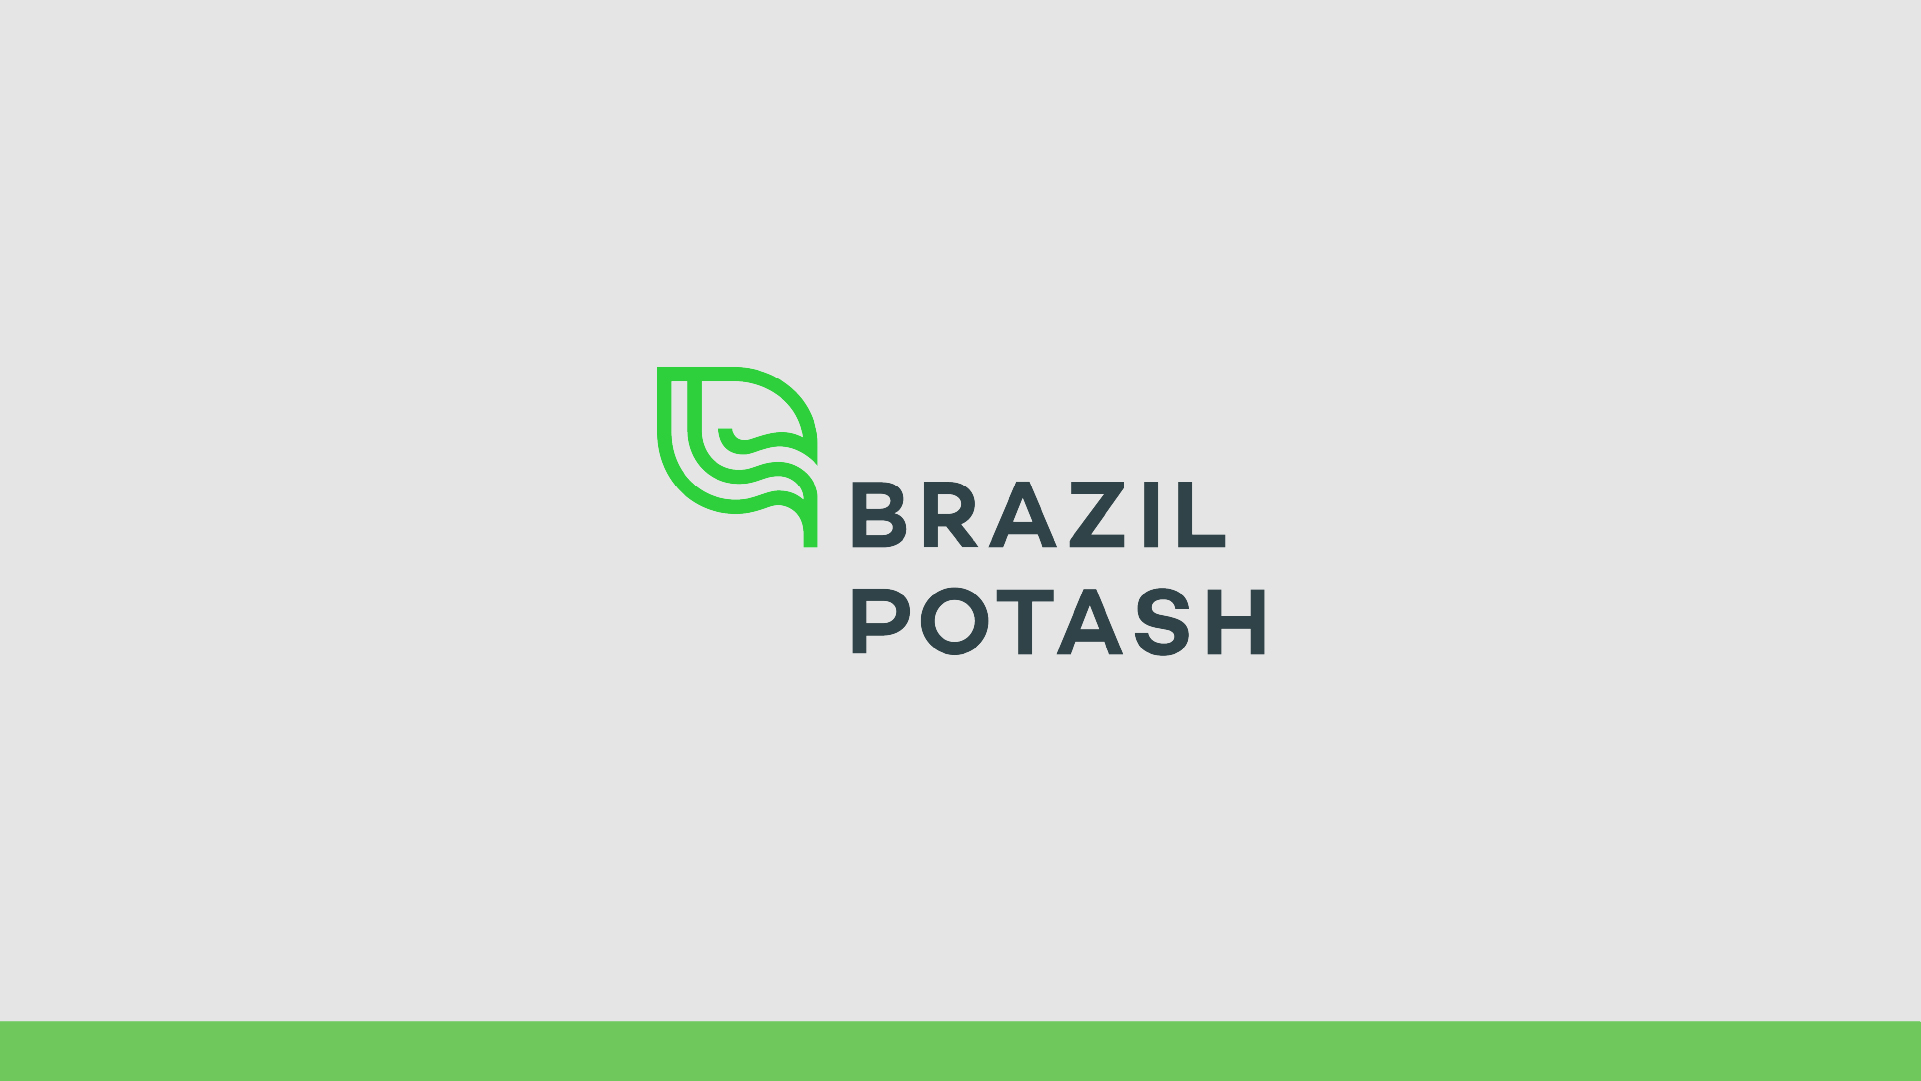 Brazil Potash logo